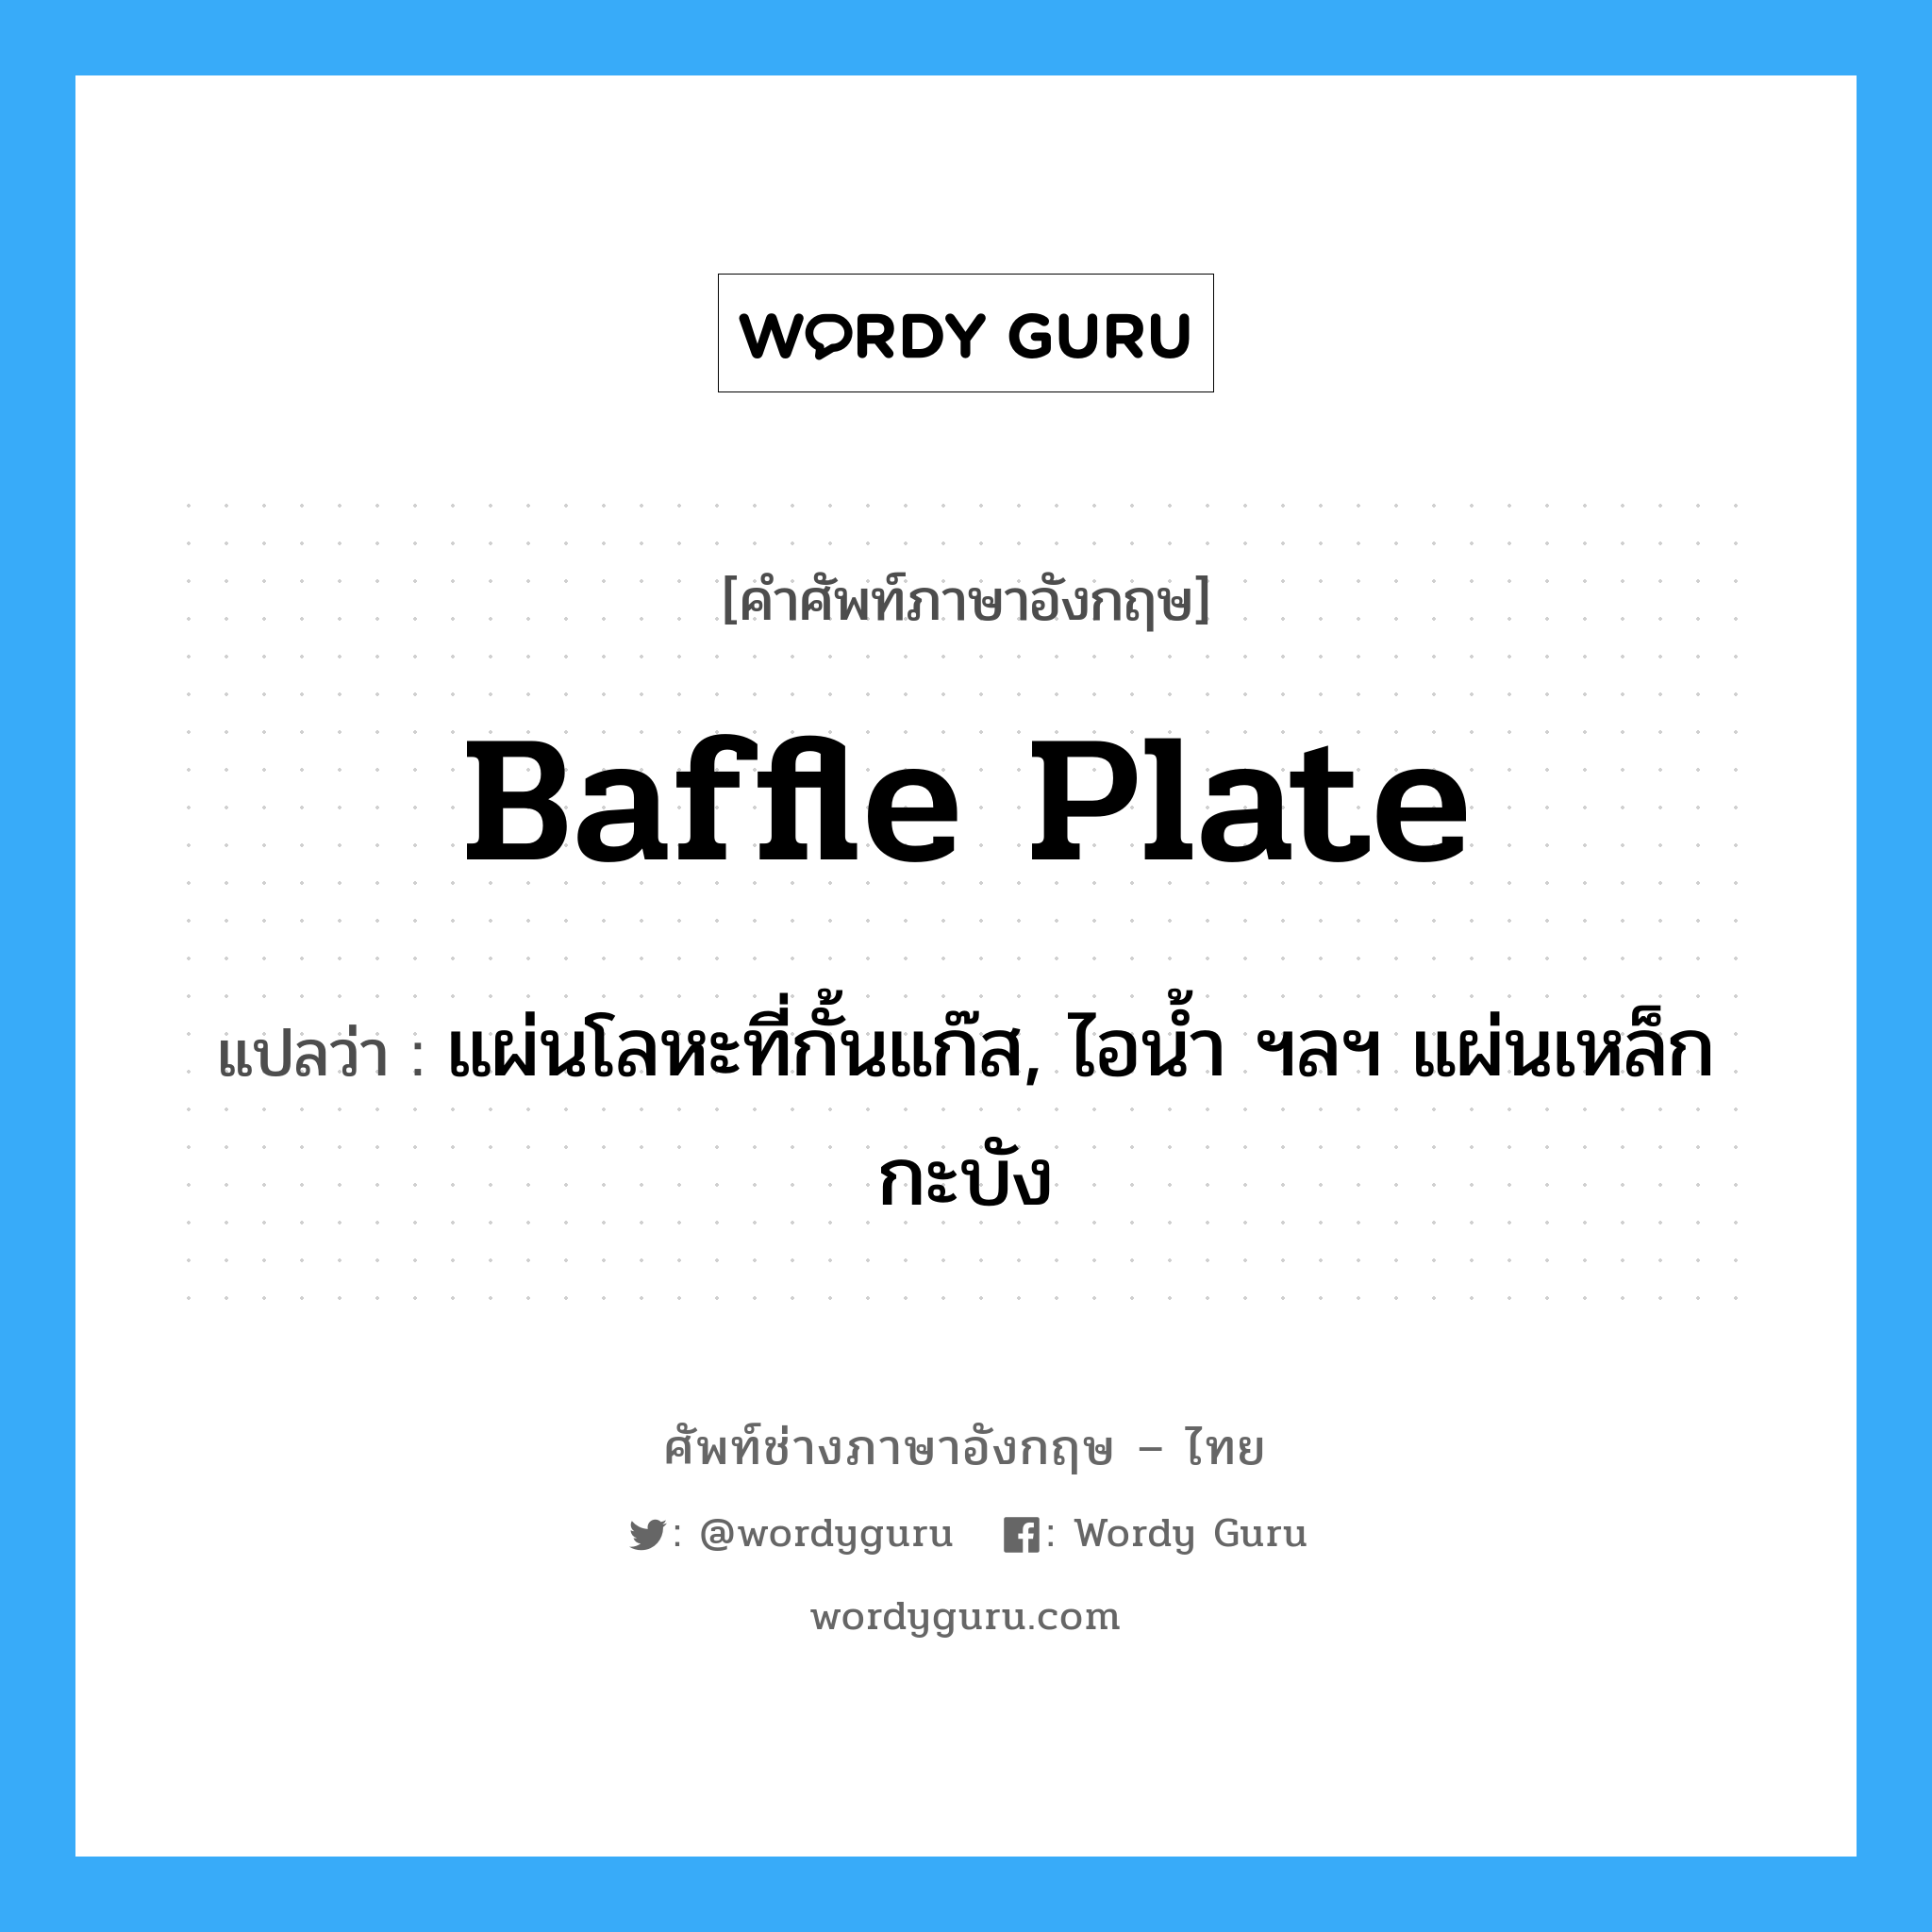 baffle plate แปลว่า?, คำศัพท์ช่างภาษาอังกฤษ - ไทย baffle plate คำศัพท์ภาษาอังกฤษ baffle plate แปลว่า แผ่นโลหะที่กั้นแก๊ส, ไอน้ำ ฯลฯ แผ่นเหล็กกะบัง